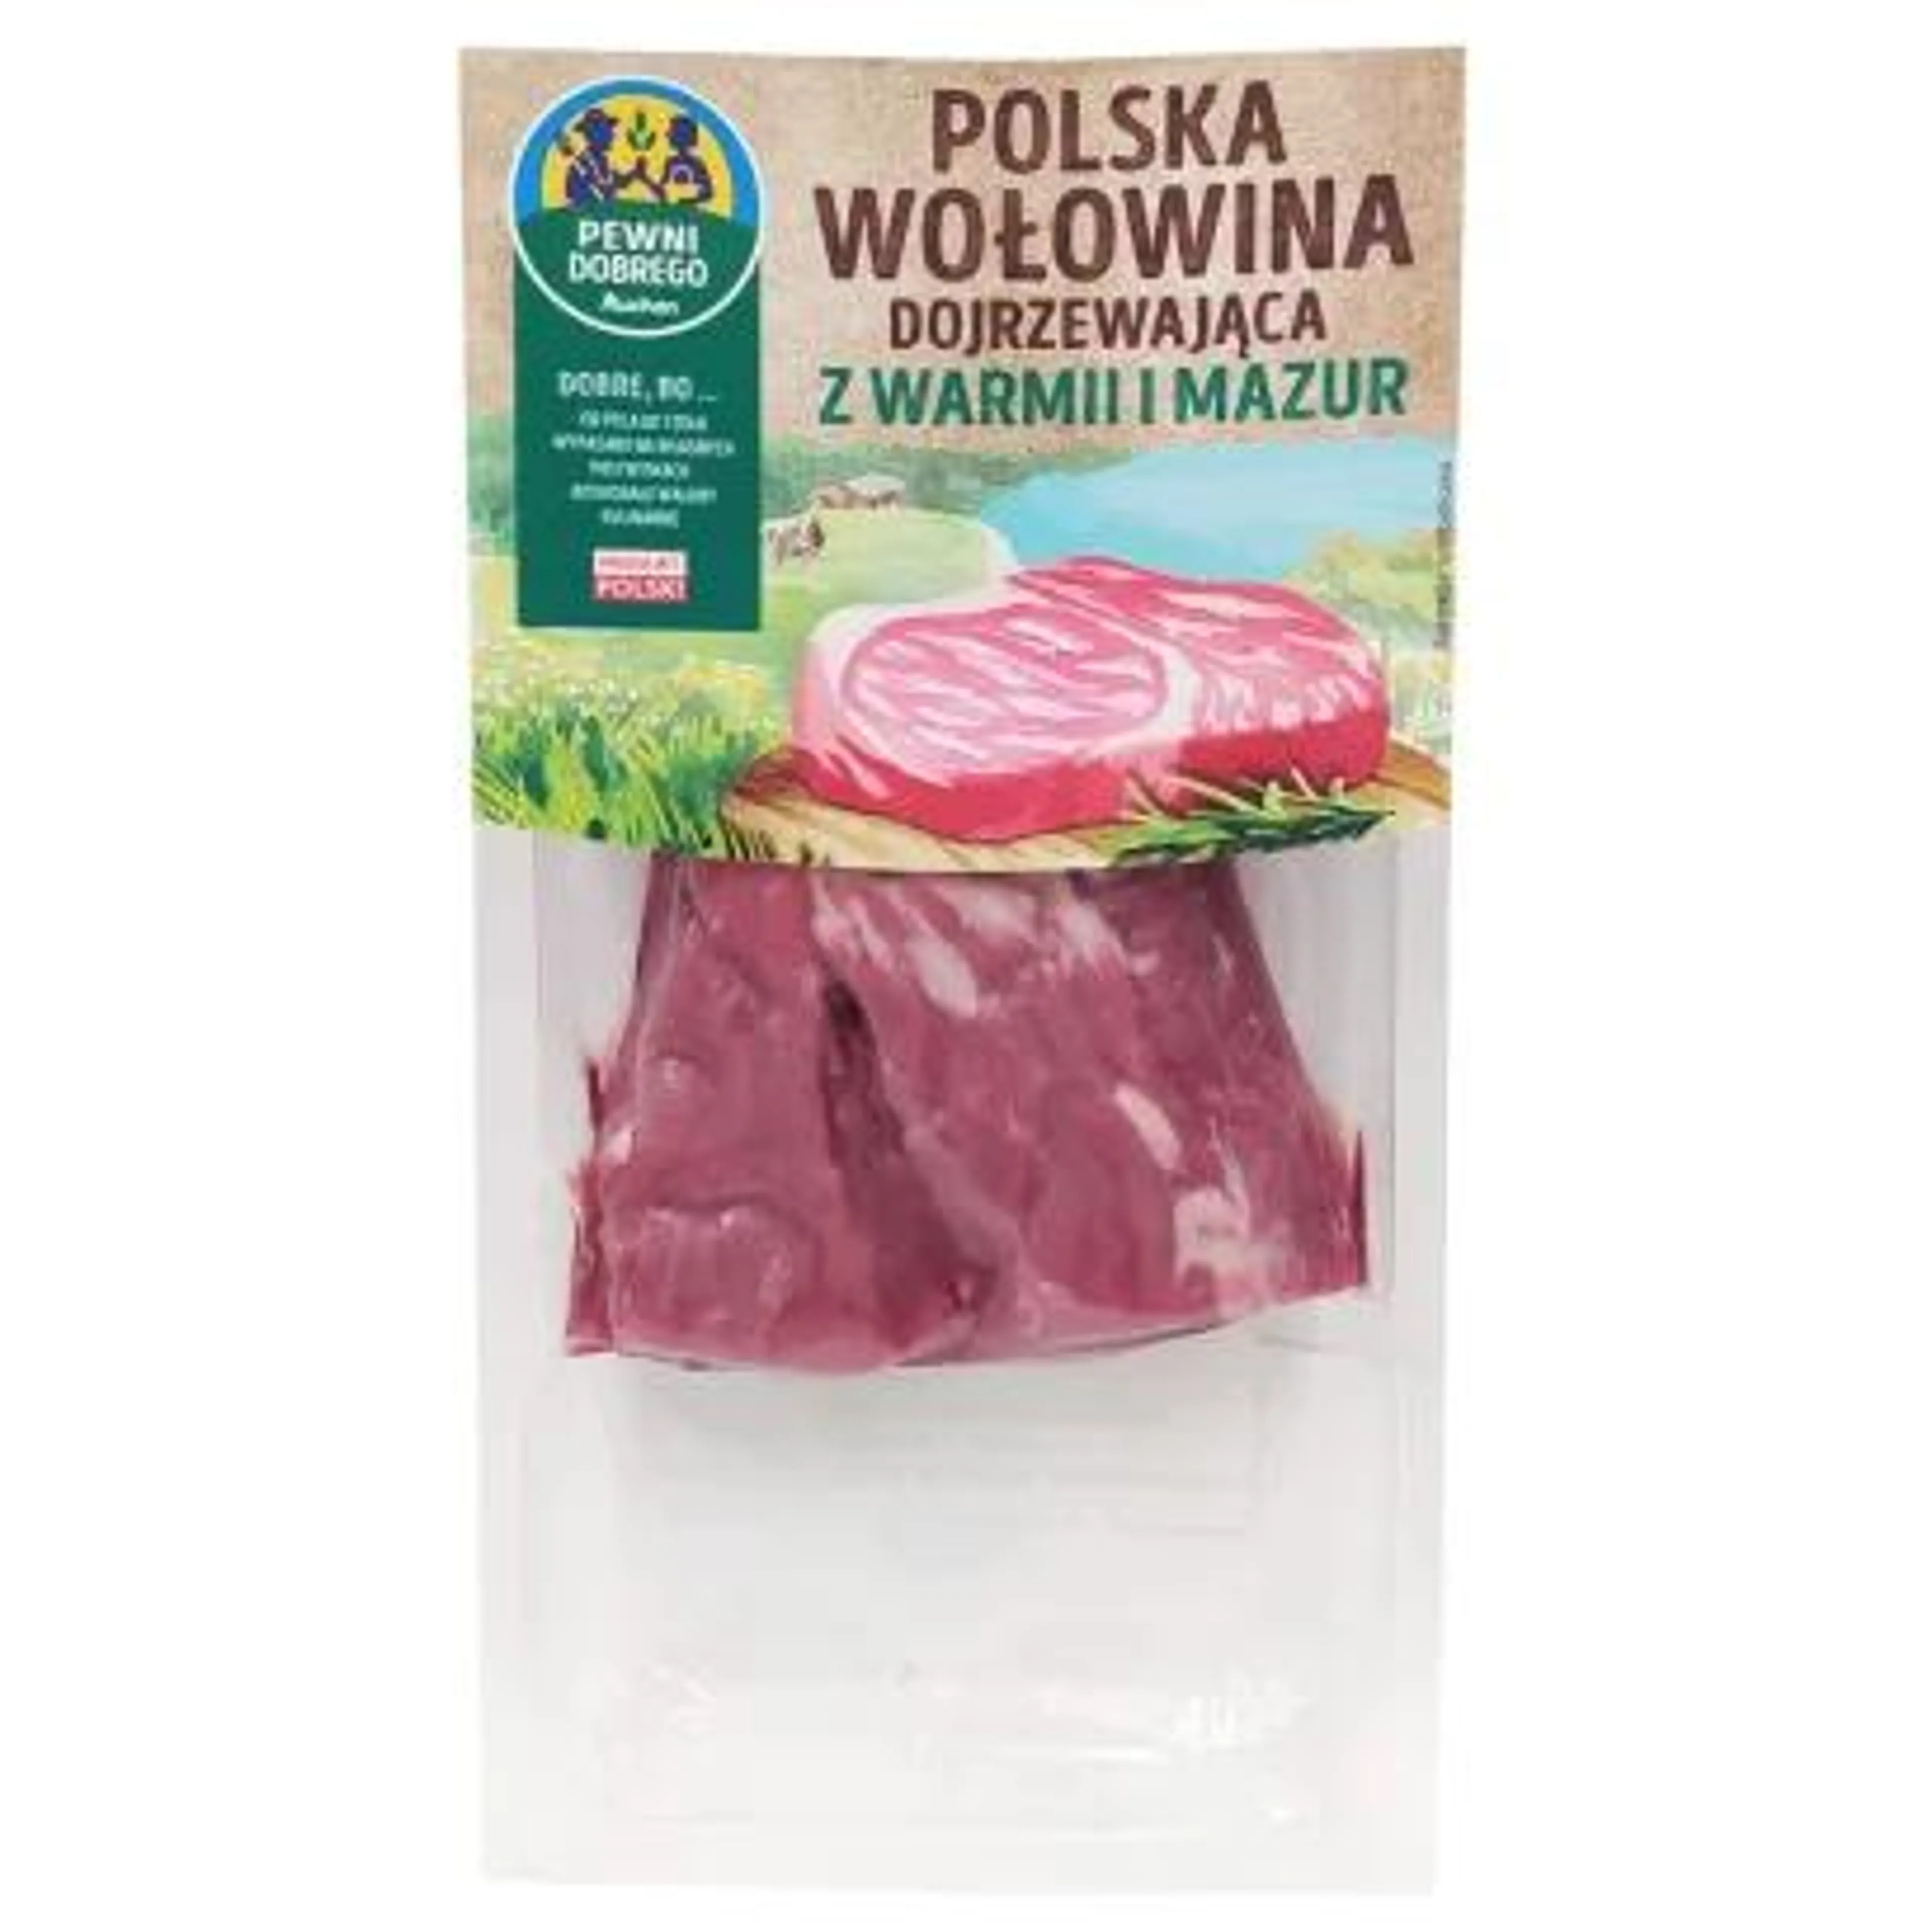 Pewni Dobrego - Stek wołowy z polędwicy dojrzewający